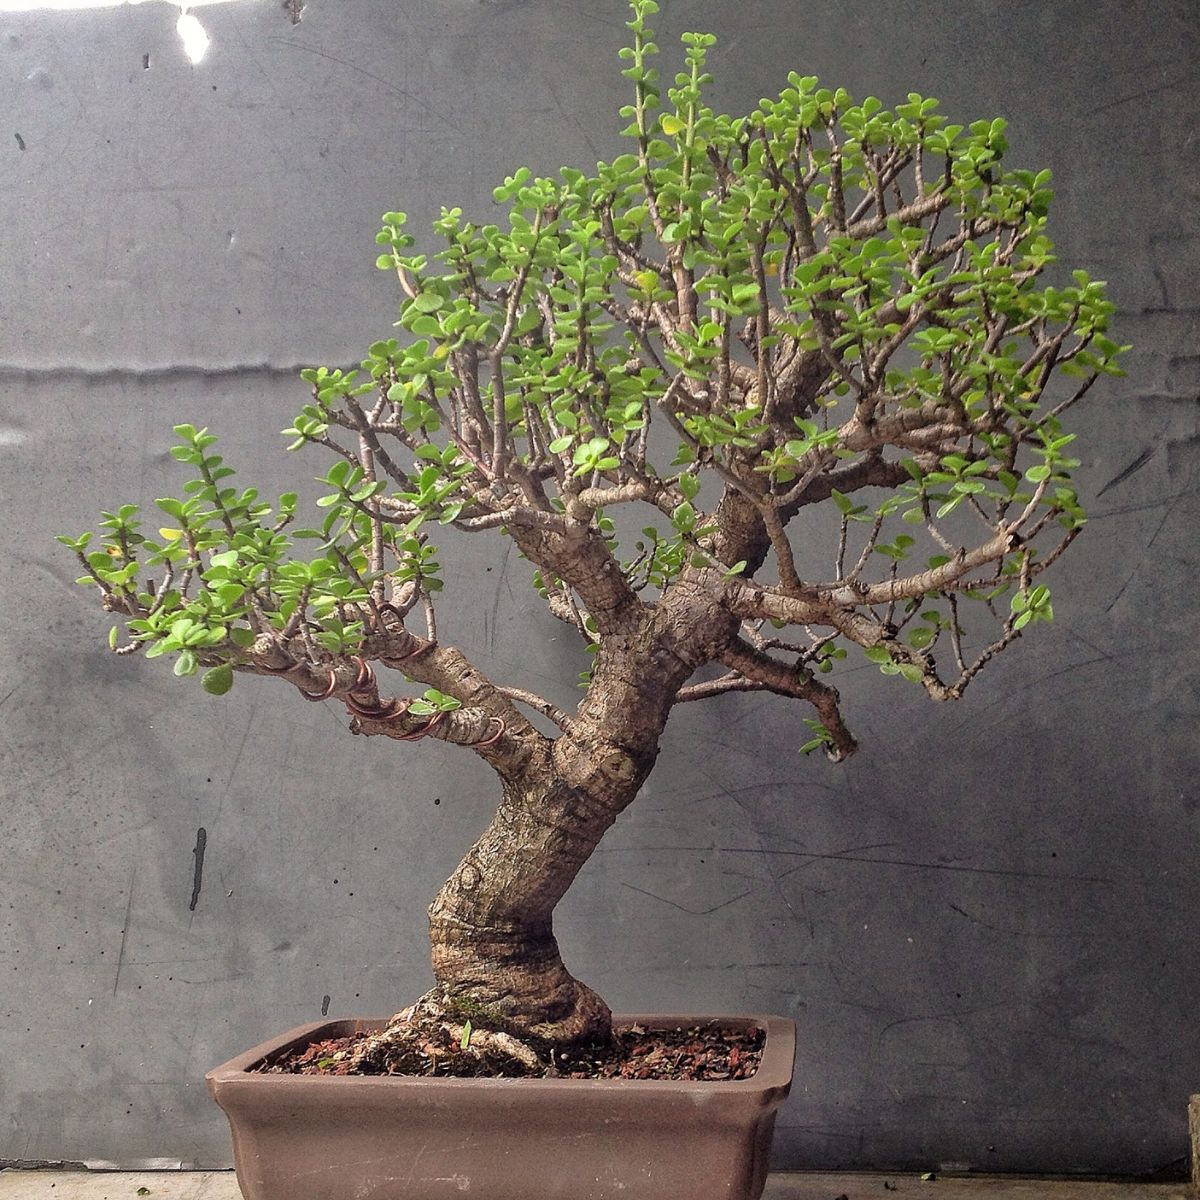 Dwarf Jade bonsai tree on Thursd